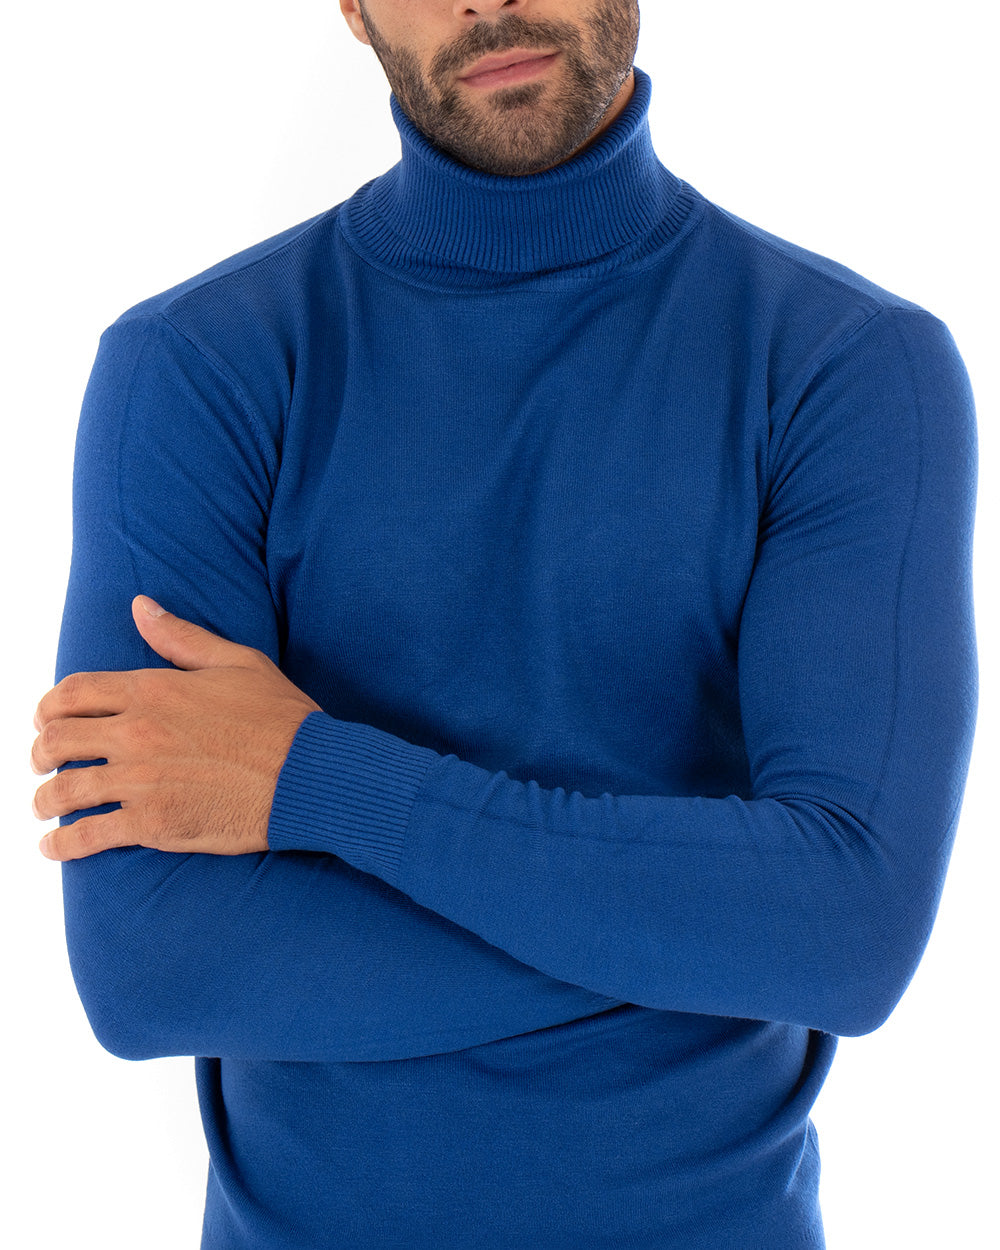 Maglioncino Uomo Maglia Maniche Lunghe Collo Alto Elastico Tinta Unita Blu Royal GIOSAL-M2547A